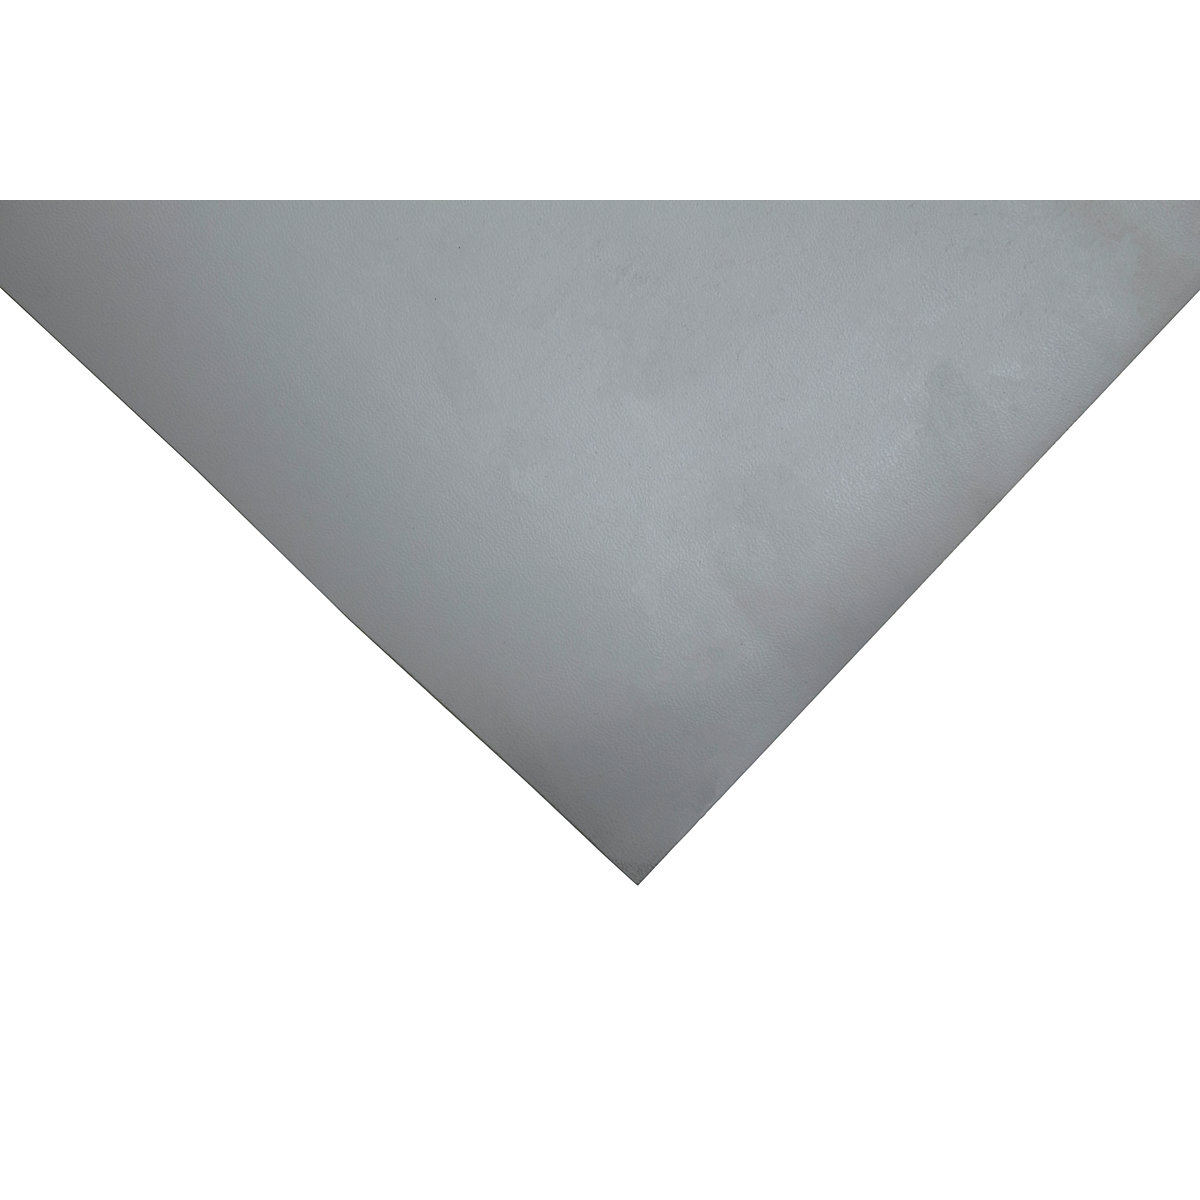 Tapis de table antistatique HR-Matting, L x l 3000 x 1200 mm, gris